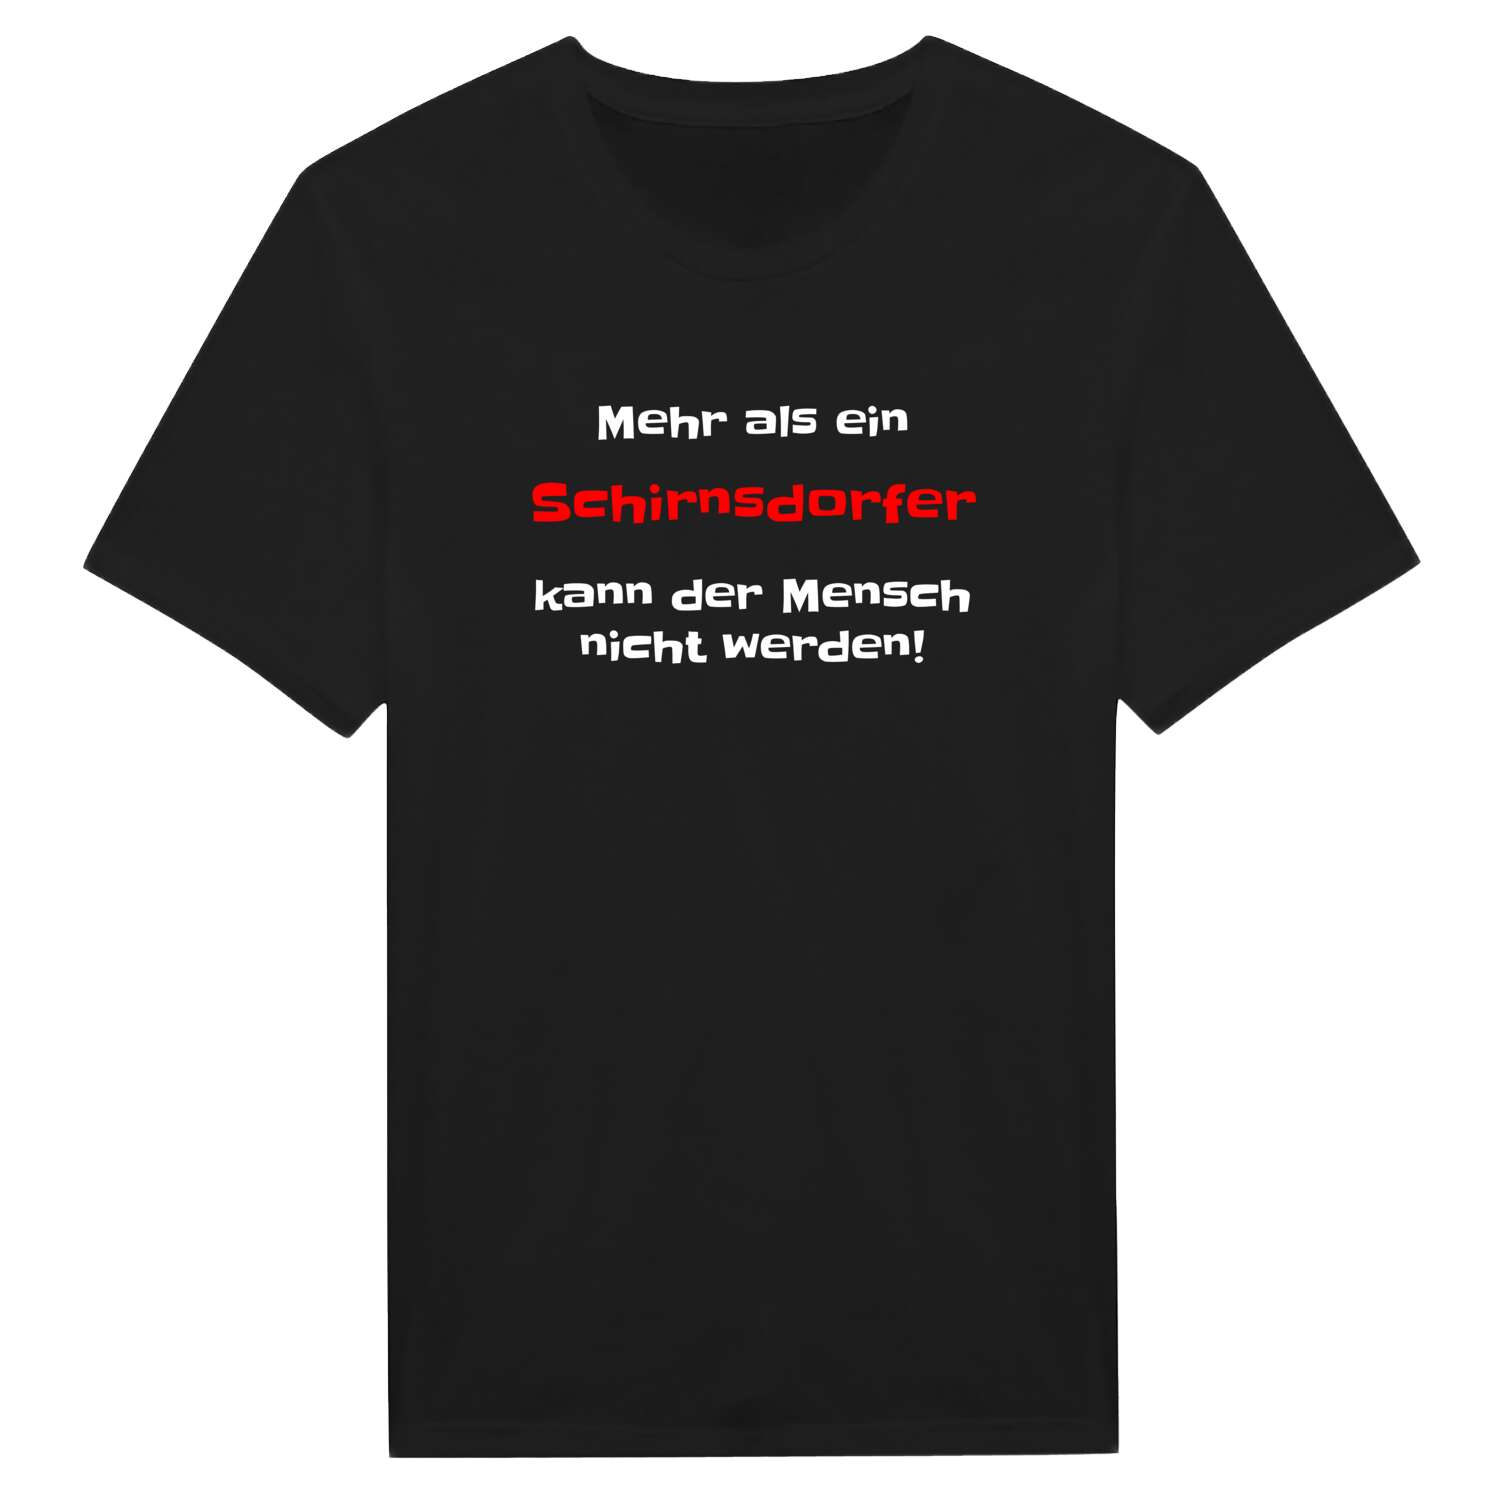 Schirnsdorf T-Shirt »Mehr als ein«